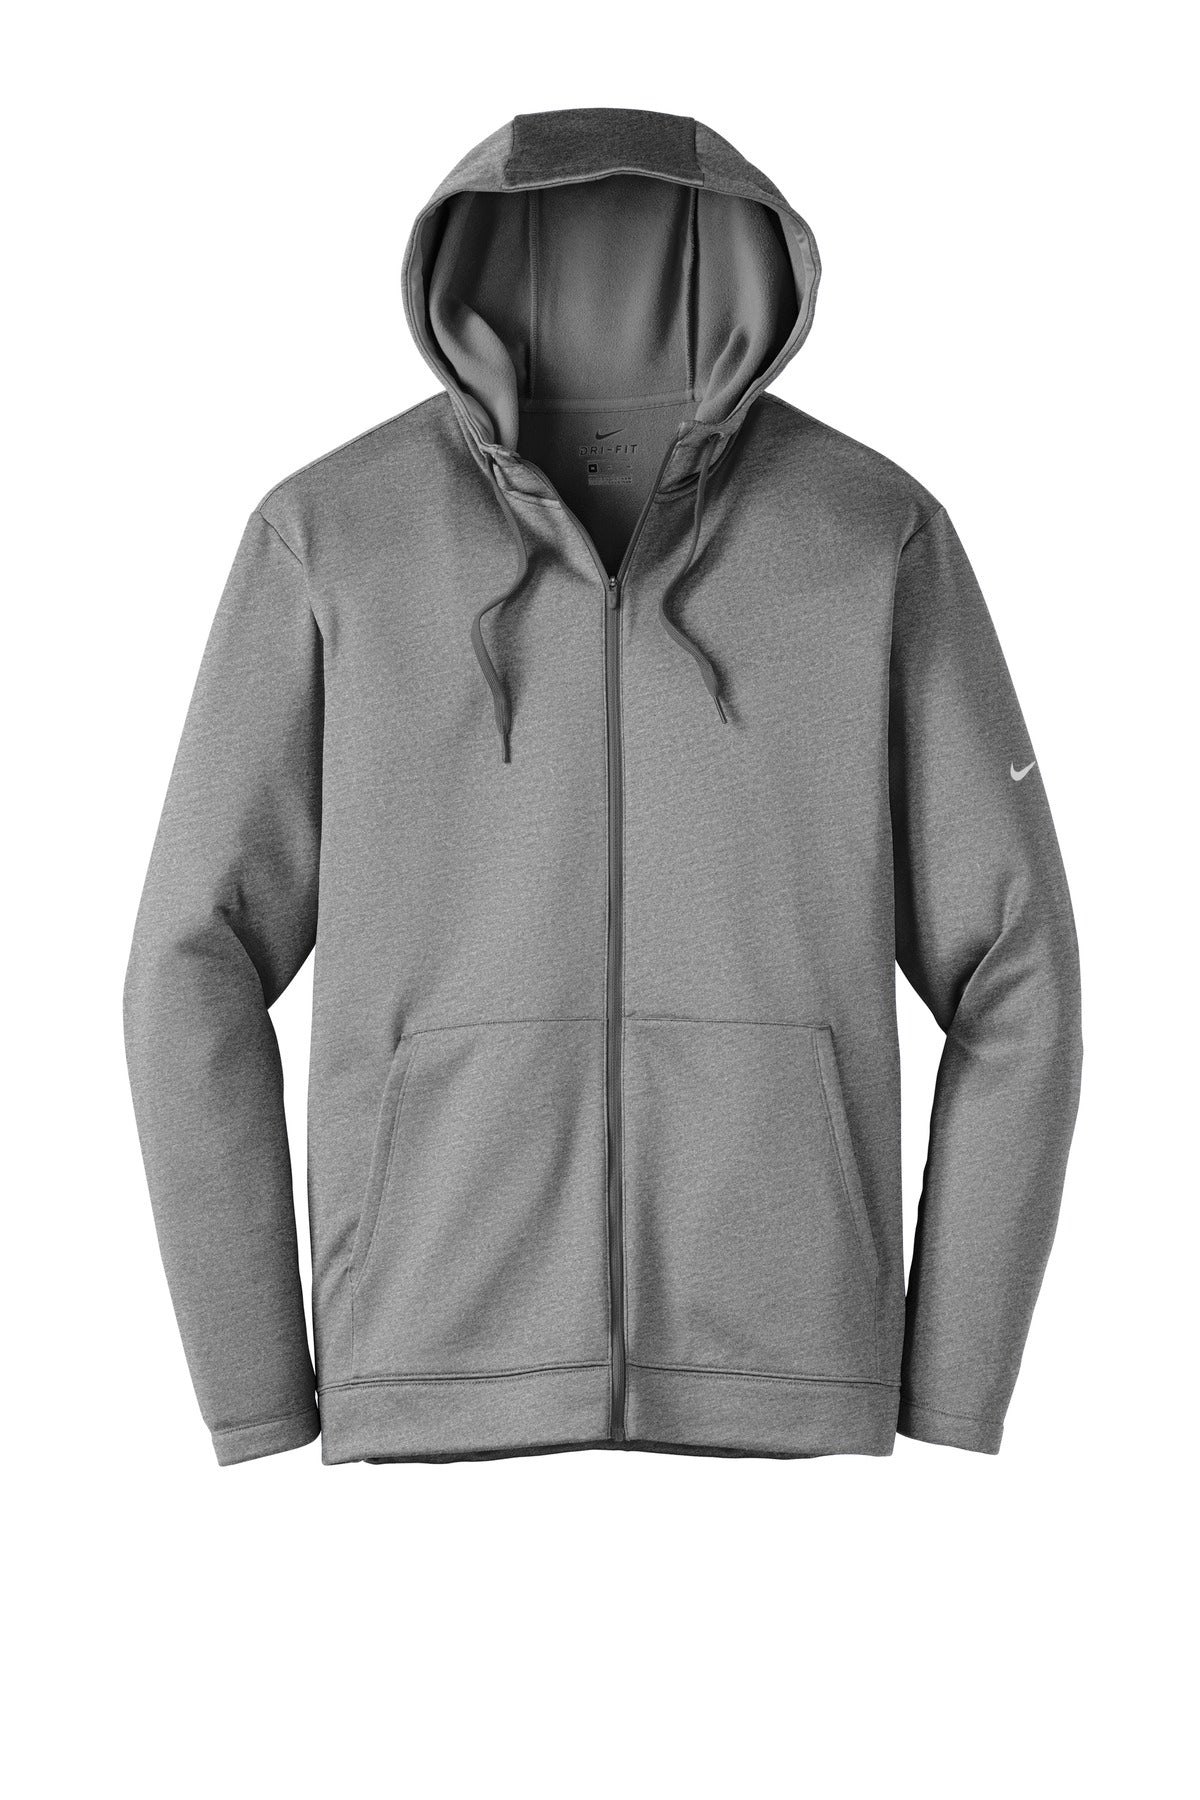 Nike Therma-FIT Full-Zip Fleece Hoodie. NKAH6259